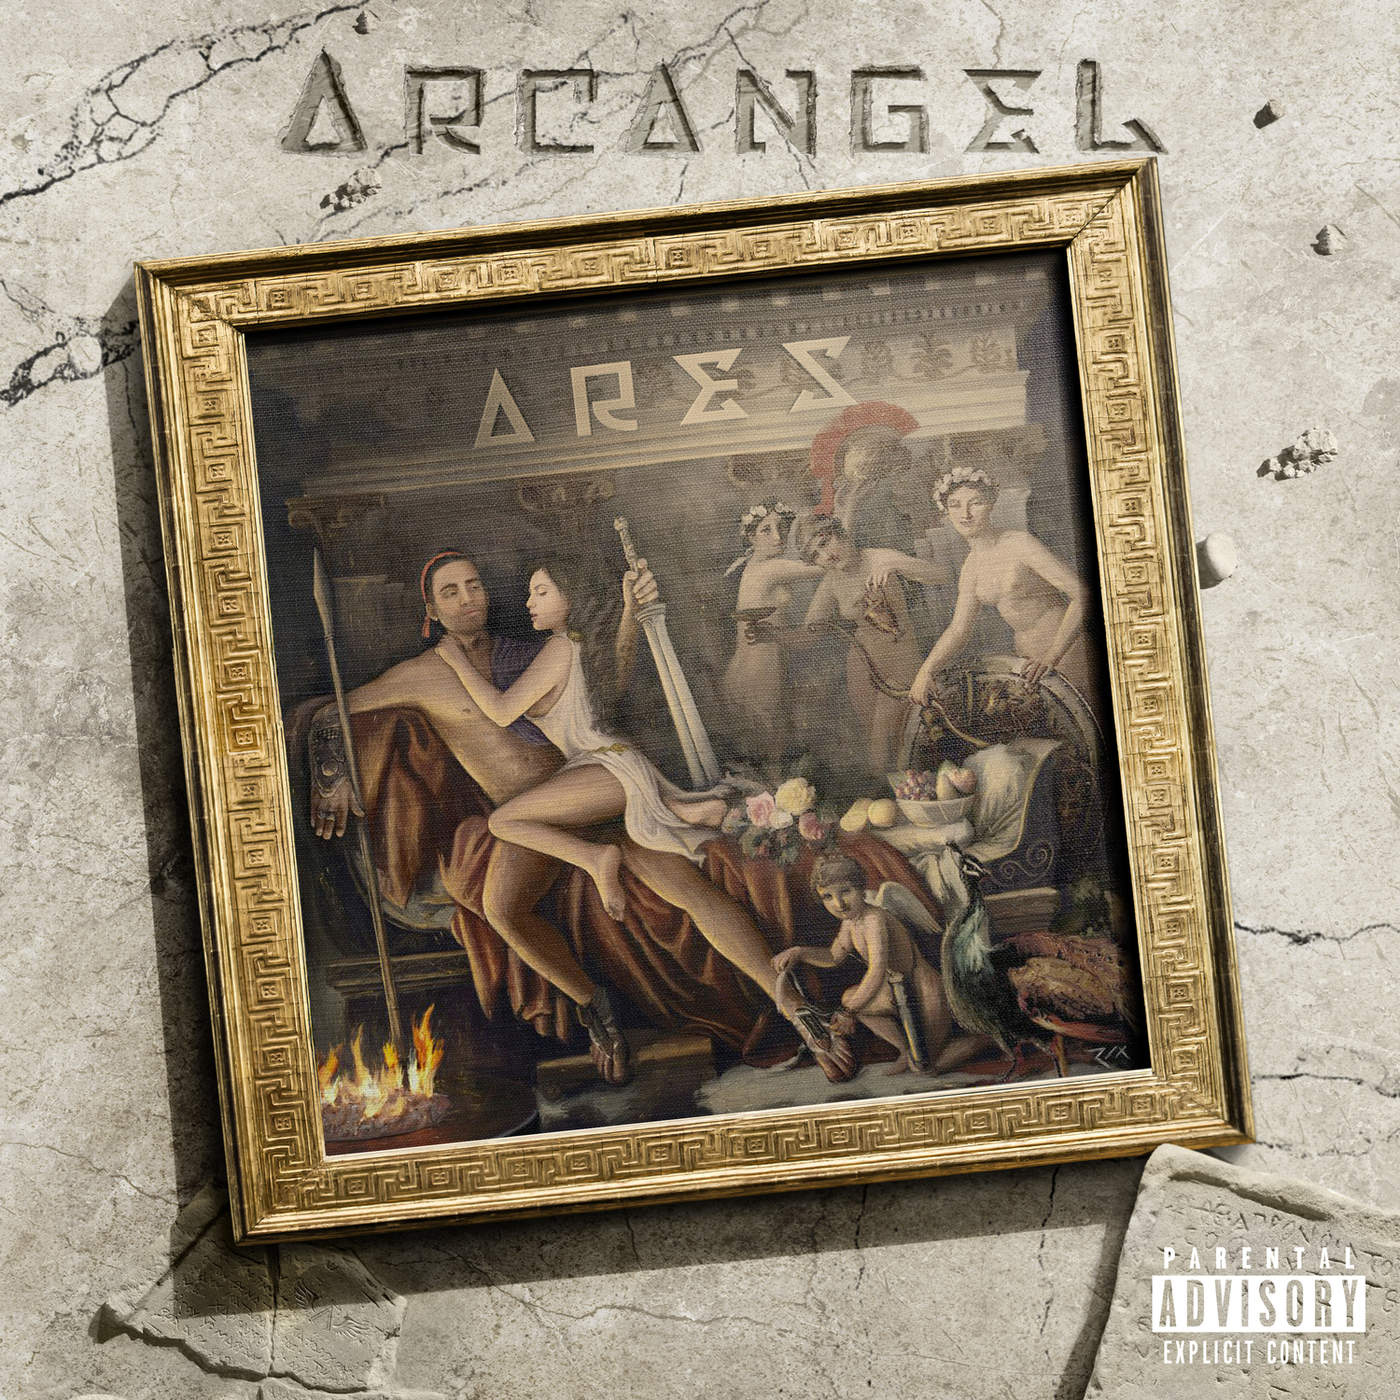 Arcangel y Bad Bunny - Original (Ares).mp3